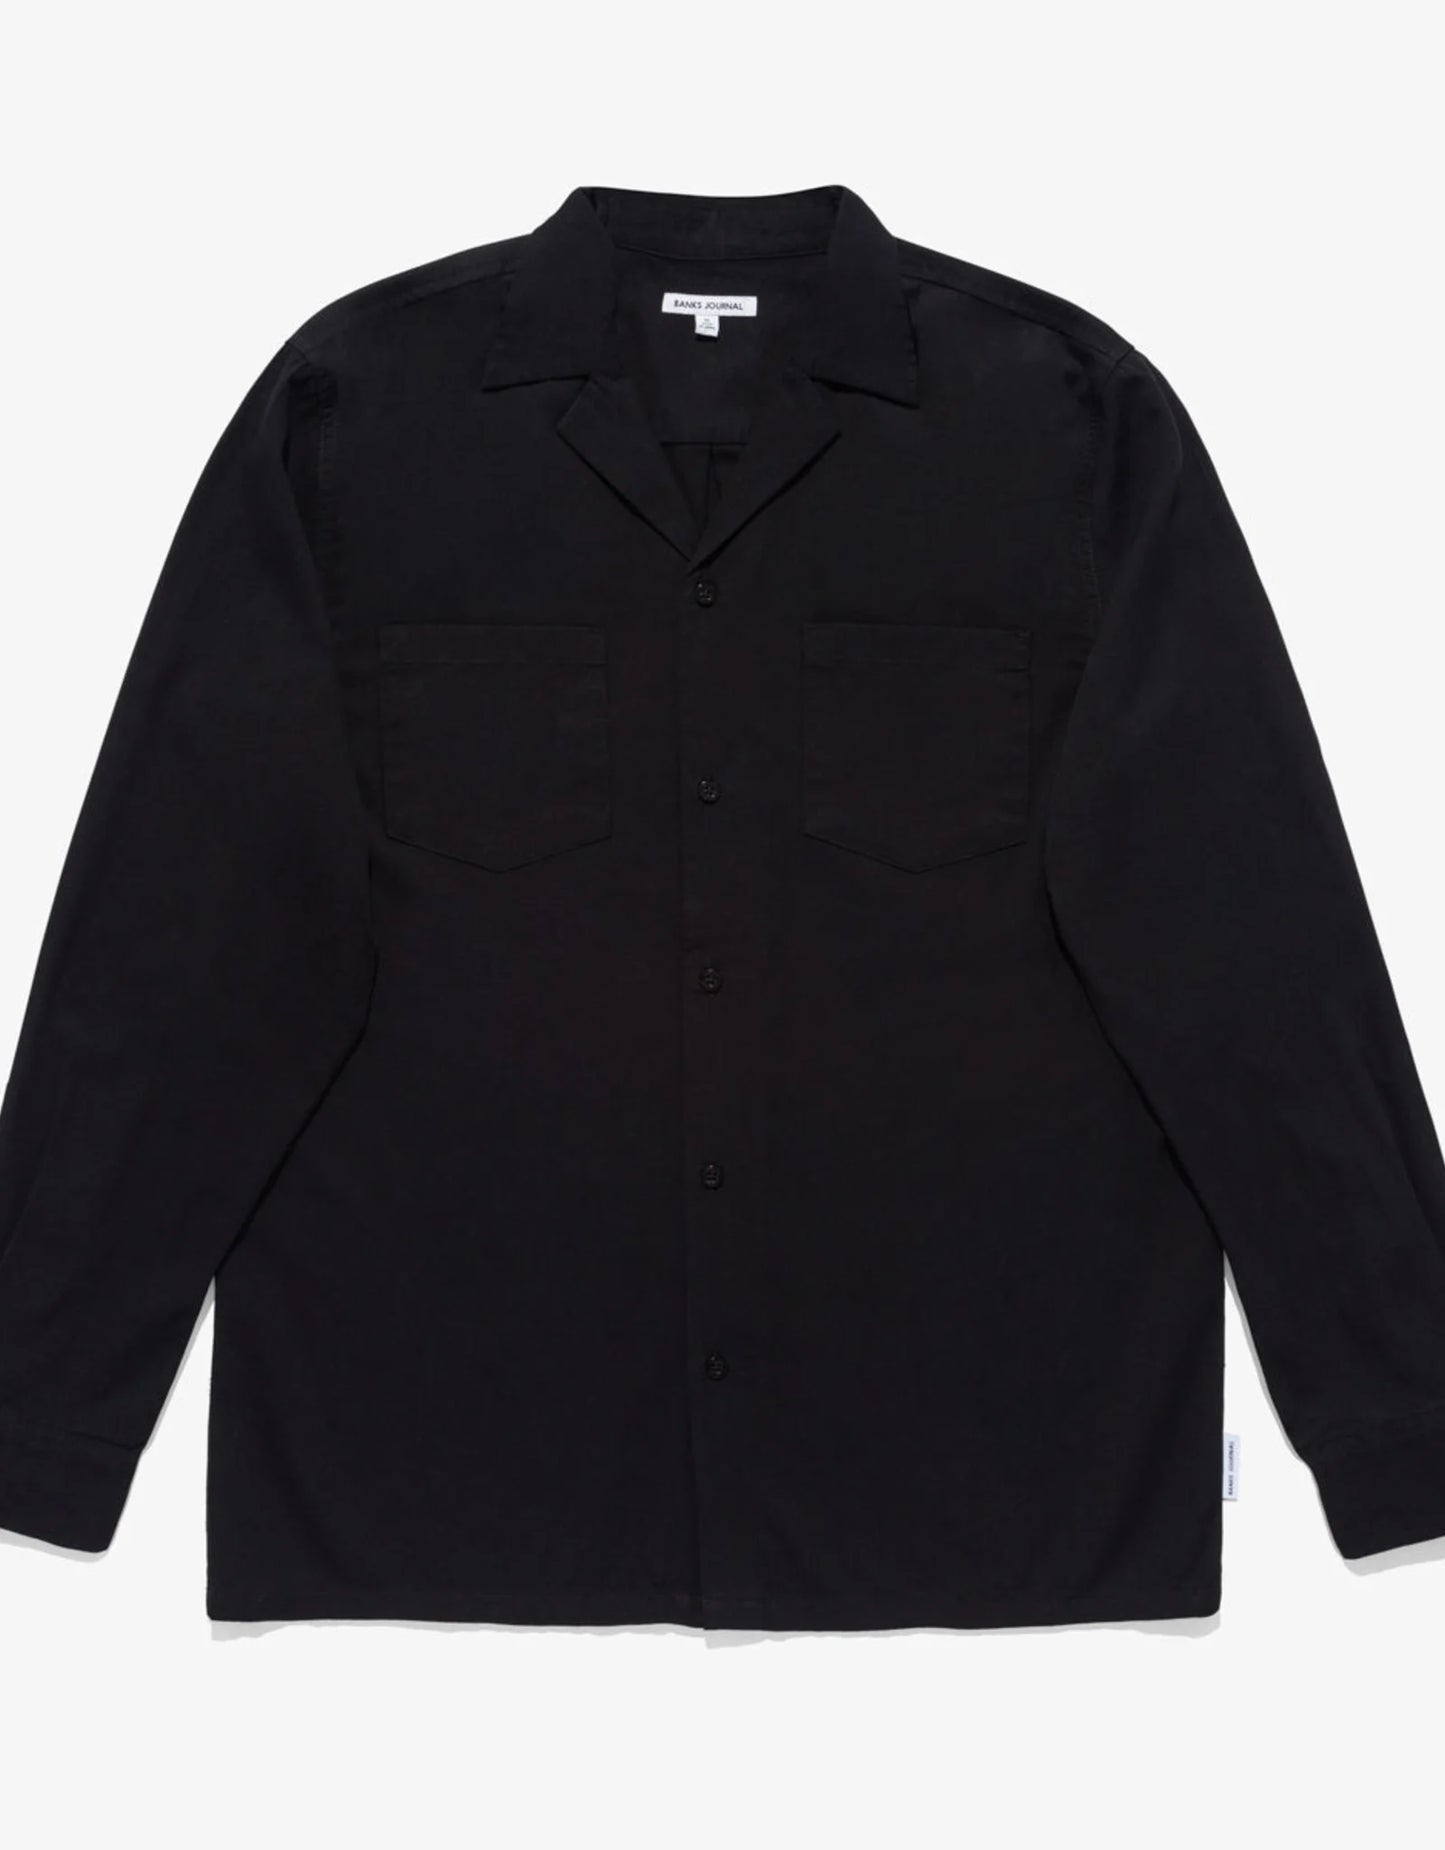 Jordi- L/S Shirt Black